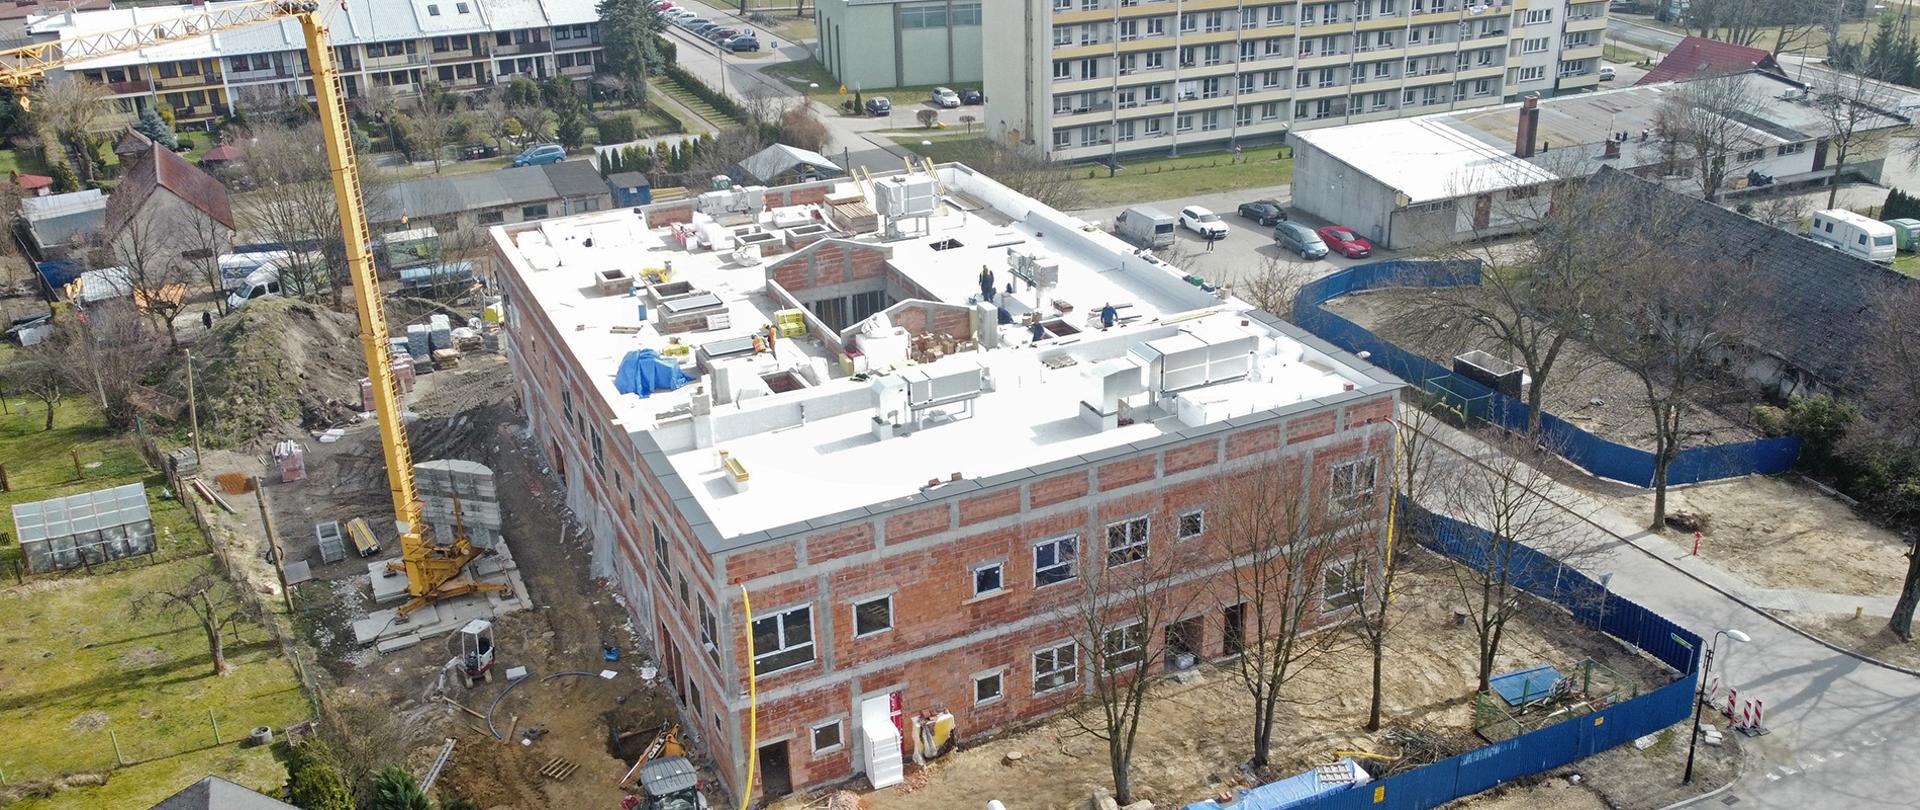 Widok z góry na budowane przedszkole, obok stoi dźwig a w tle zabudowania mieszkalne.